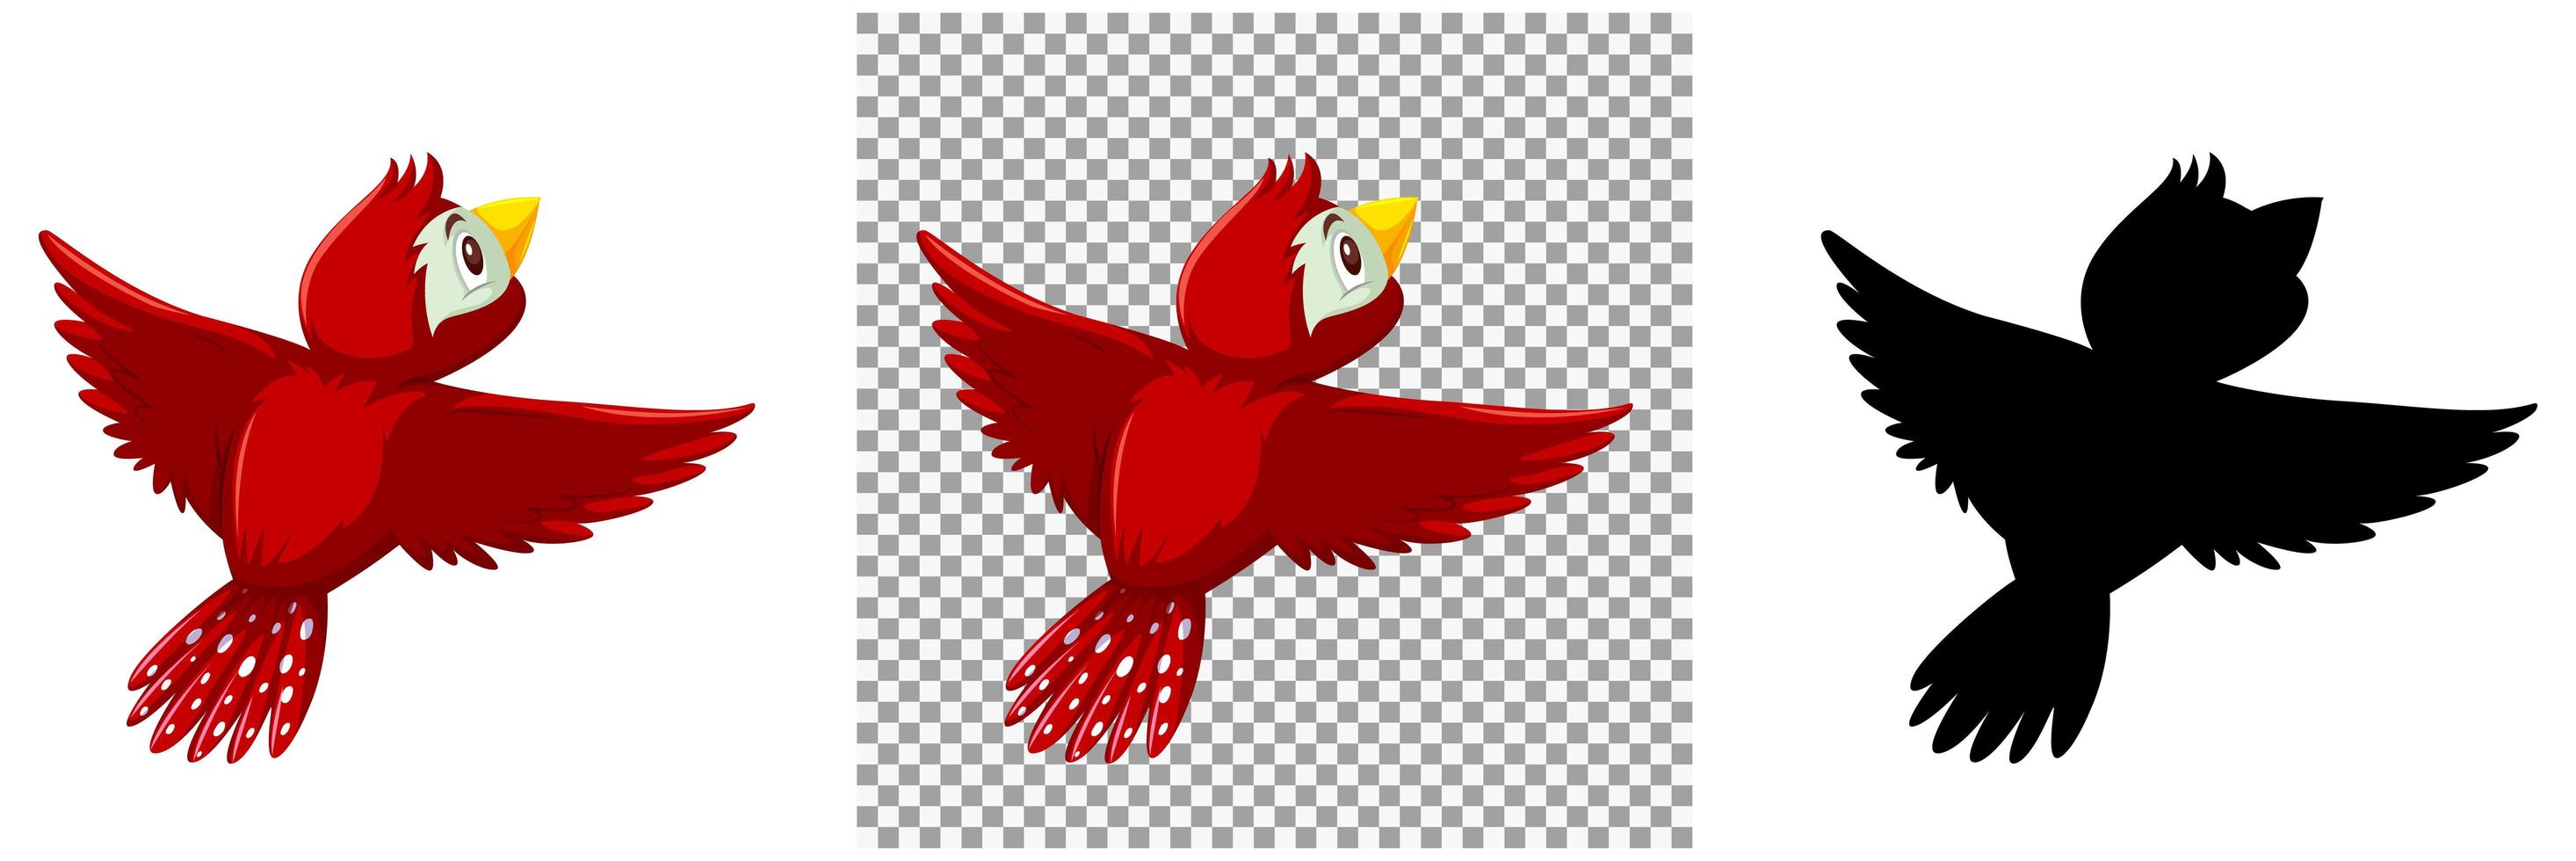 söt röd fågel seriefigur vektor